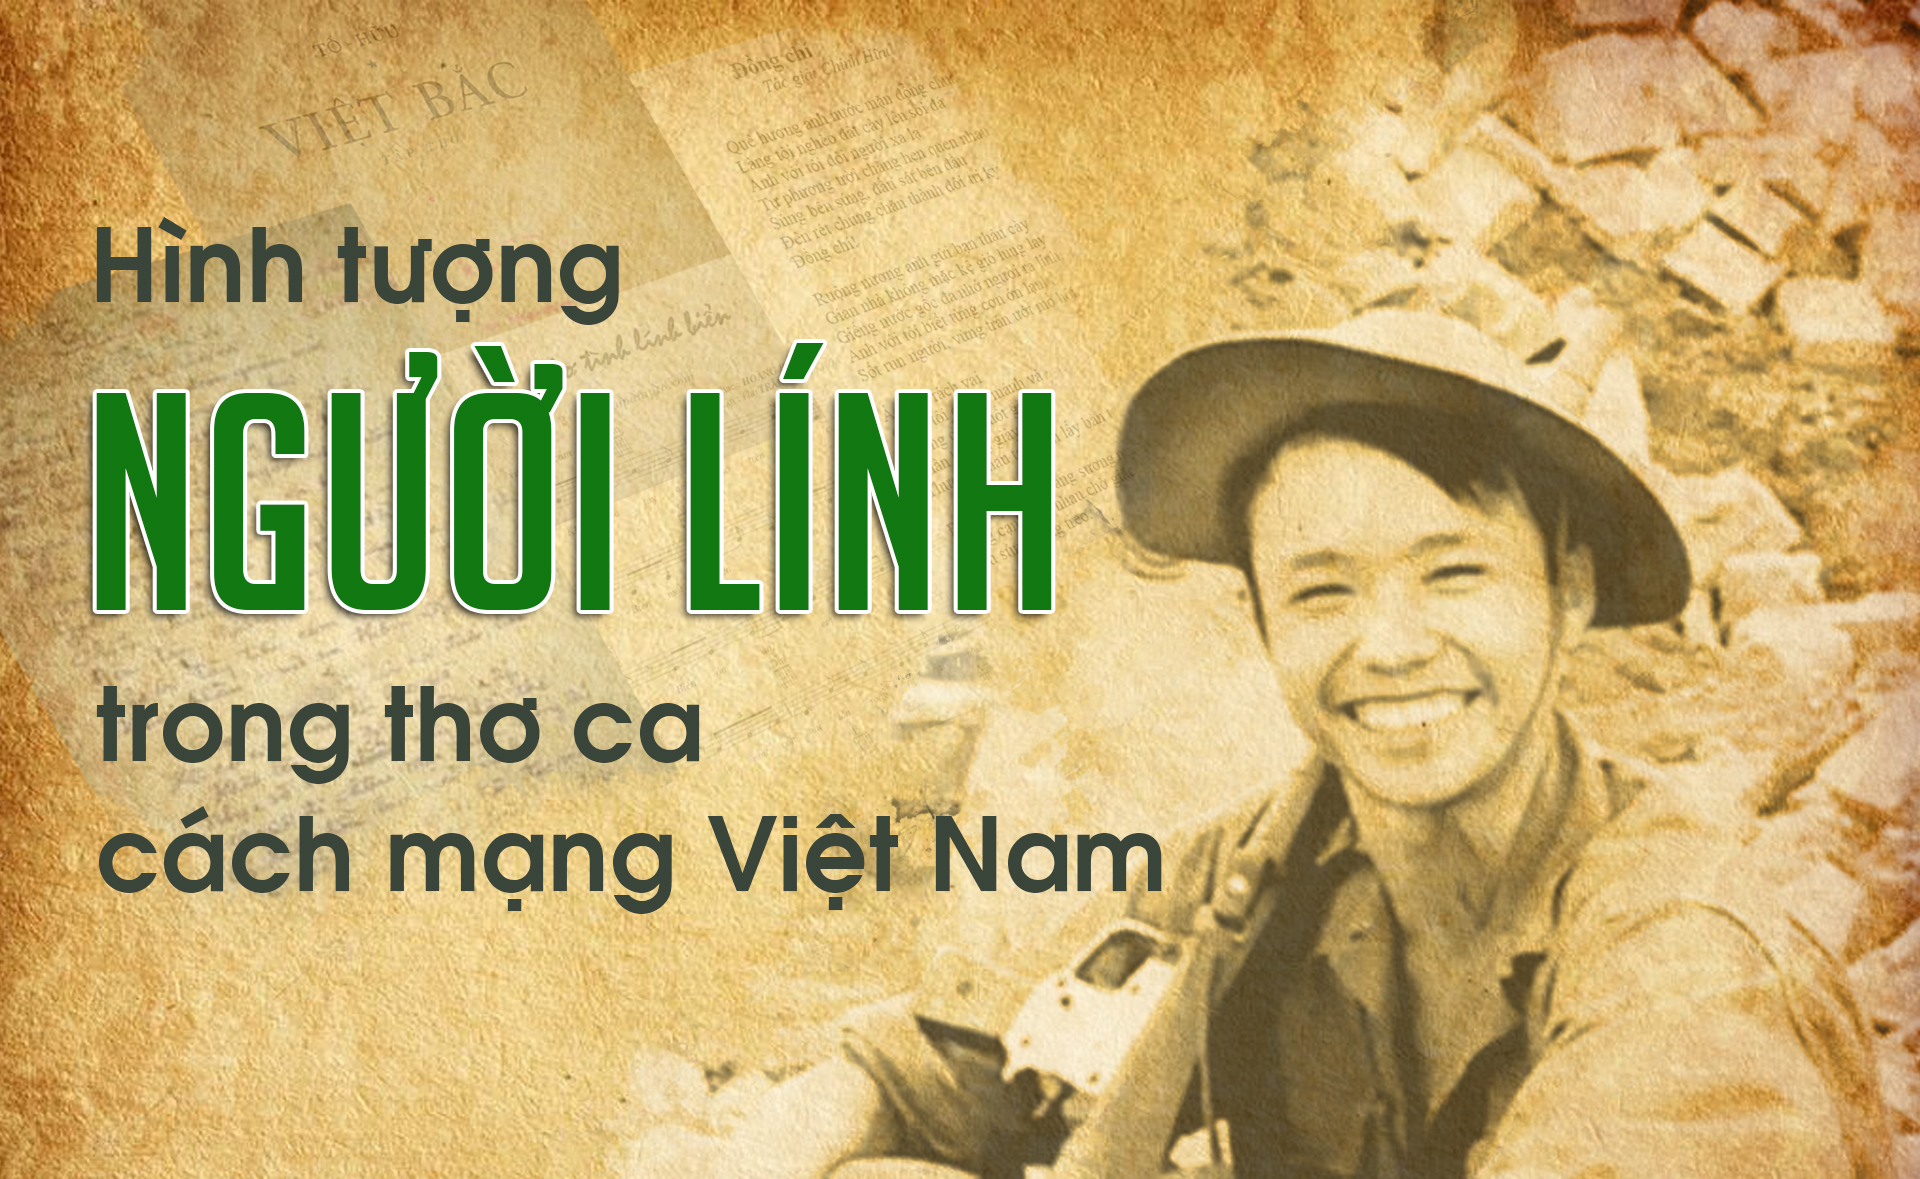 Những người lính và thơ ca cách mạng Việt Nam đã hy sinh tất cả để bảo vệ đất nước và con người Việt Nam. Hình ảnh của họ sẽ khiến bạn cảm nhận được sự tận tụy và quyết tâm của họ để bảo vệ đất nước. Hãy xem những bức ảnh này để tôn vinh sự hy sinh của những người lính và thơ ca của dân tộc Việt Nam.